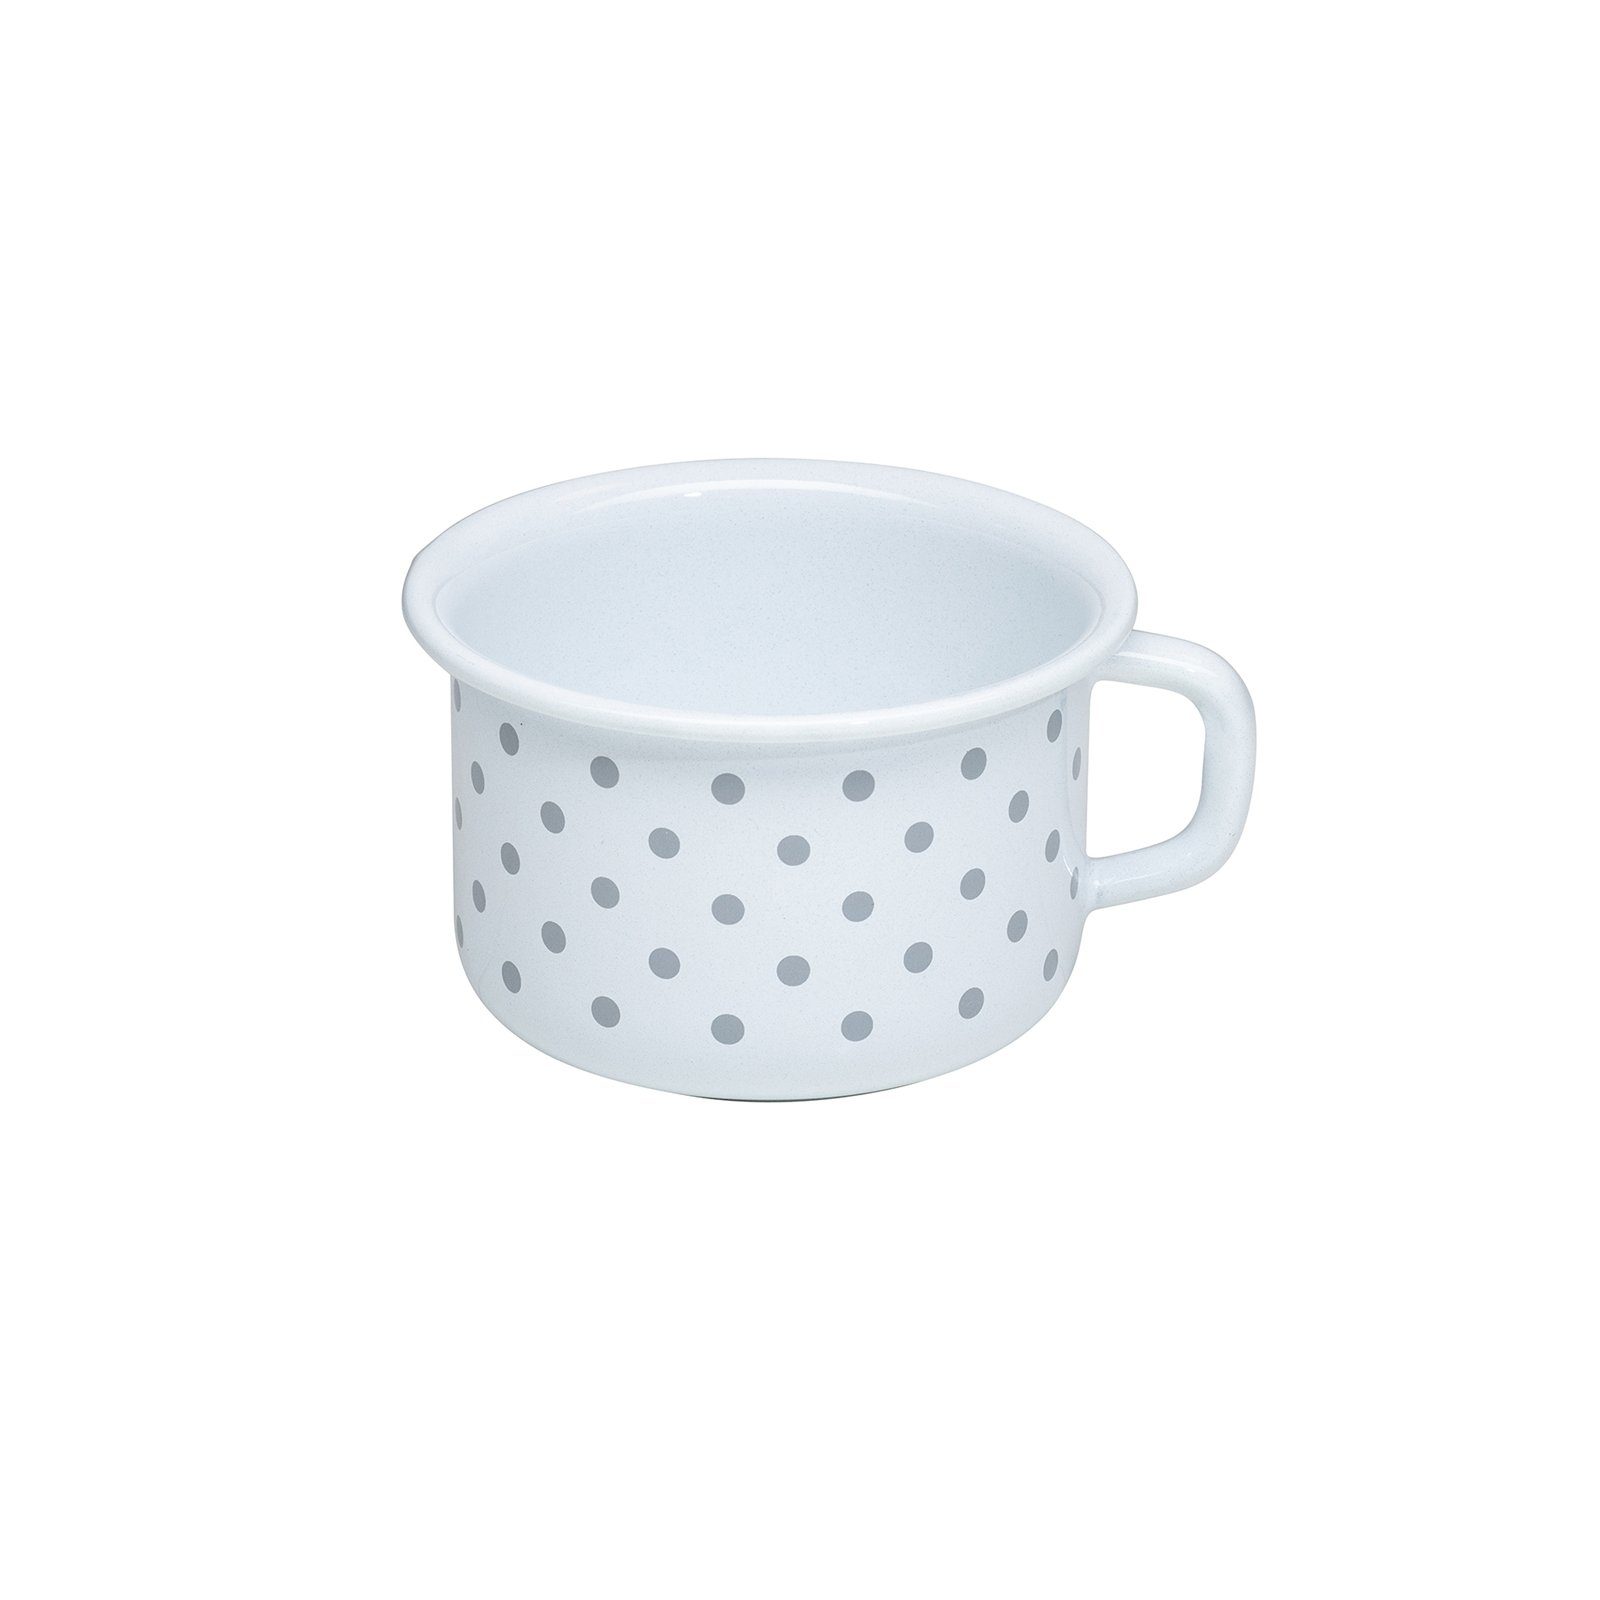 Riess Tasse Kaffeeschale Emaille Pünktchen Grau, Emaille